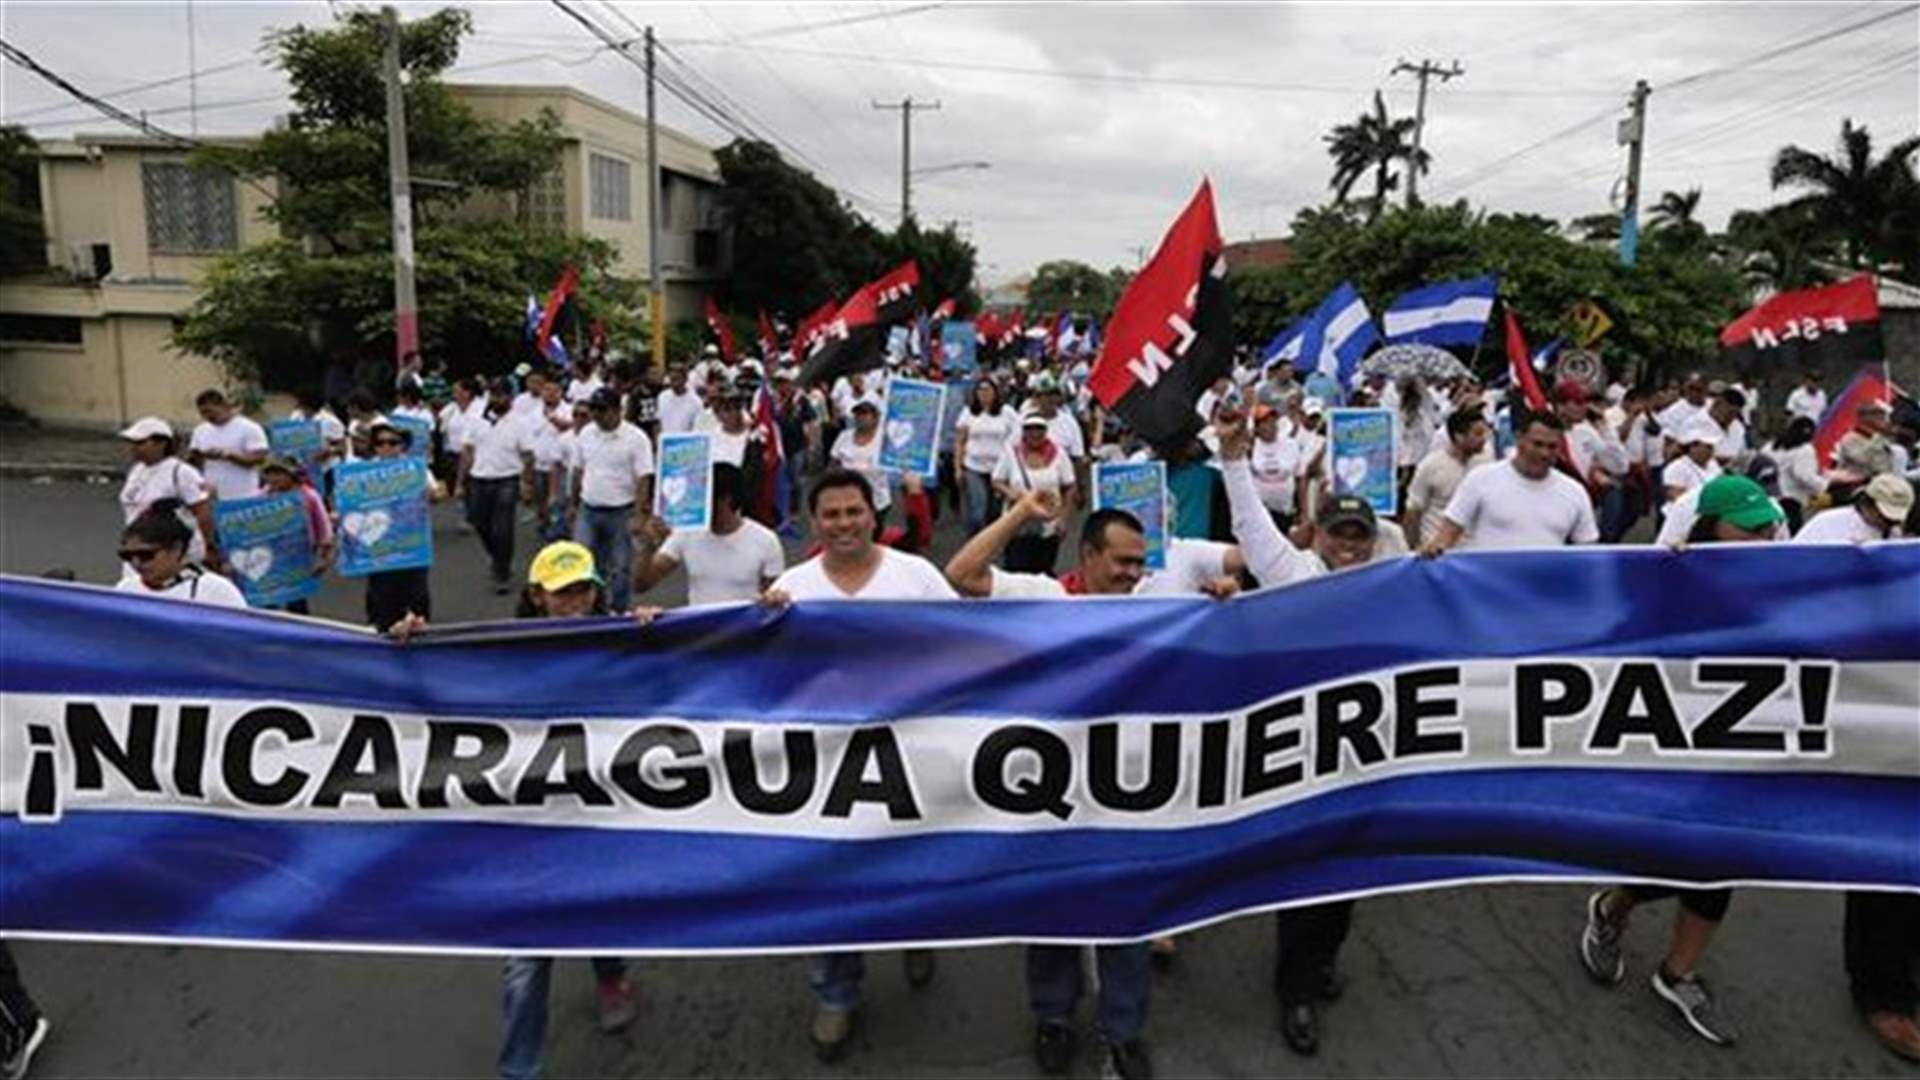 المعارضة في نيكاراغوا تتظاهر والسلطة تتشدّد